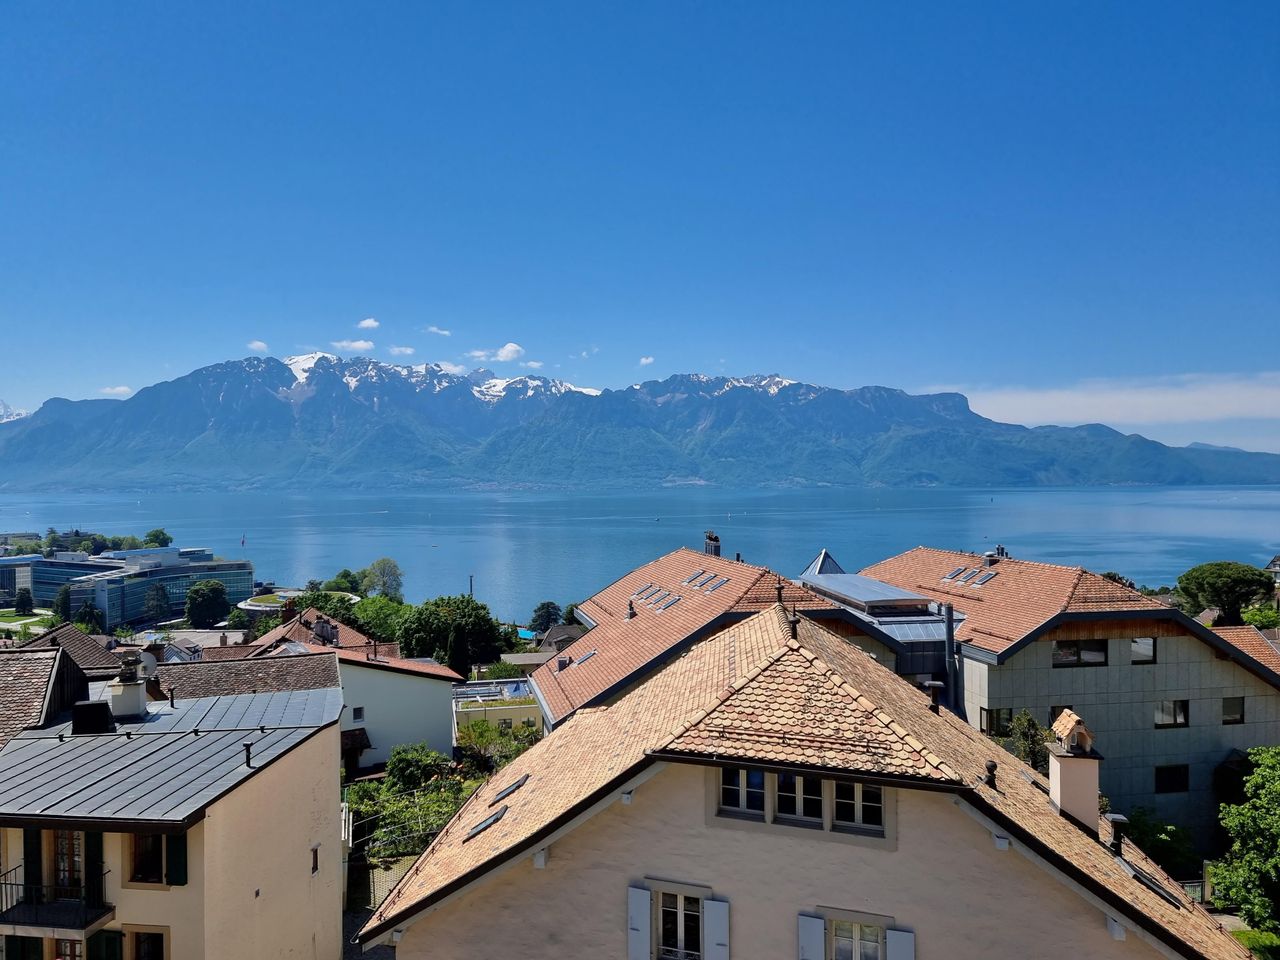 4 Tage UNESCO Weltkulturerbe und Genfer See erleben